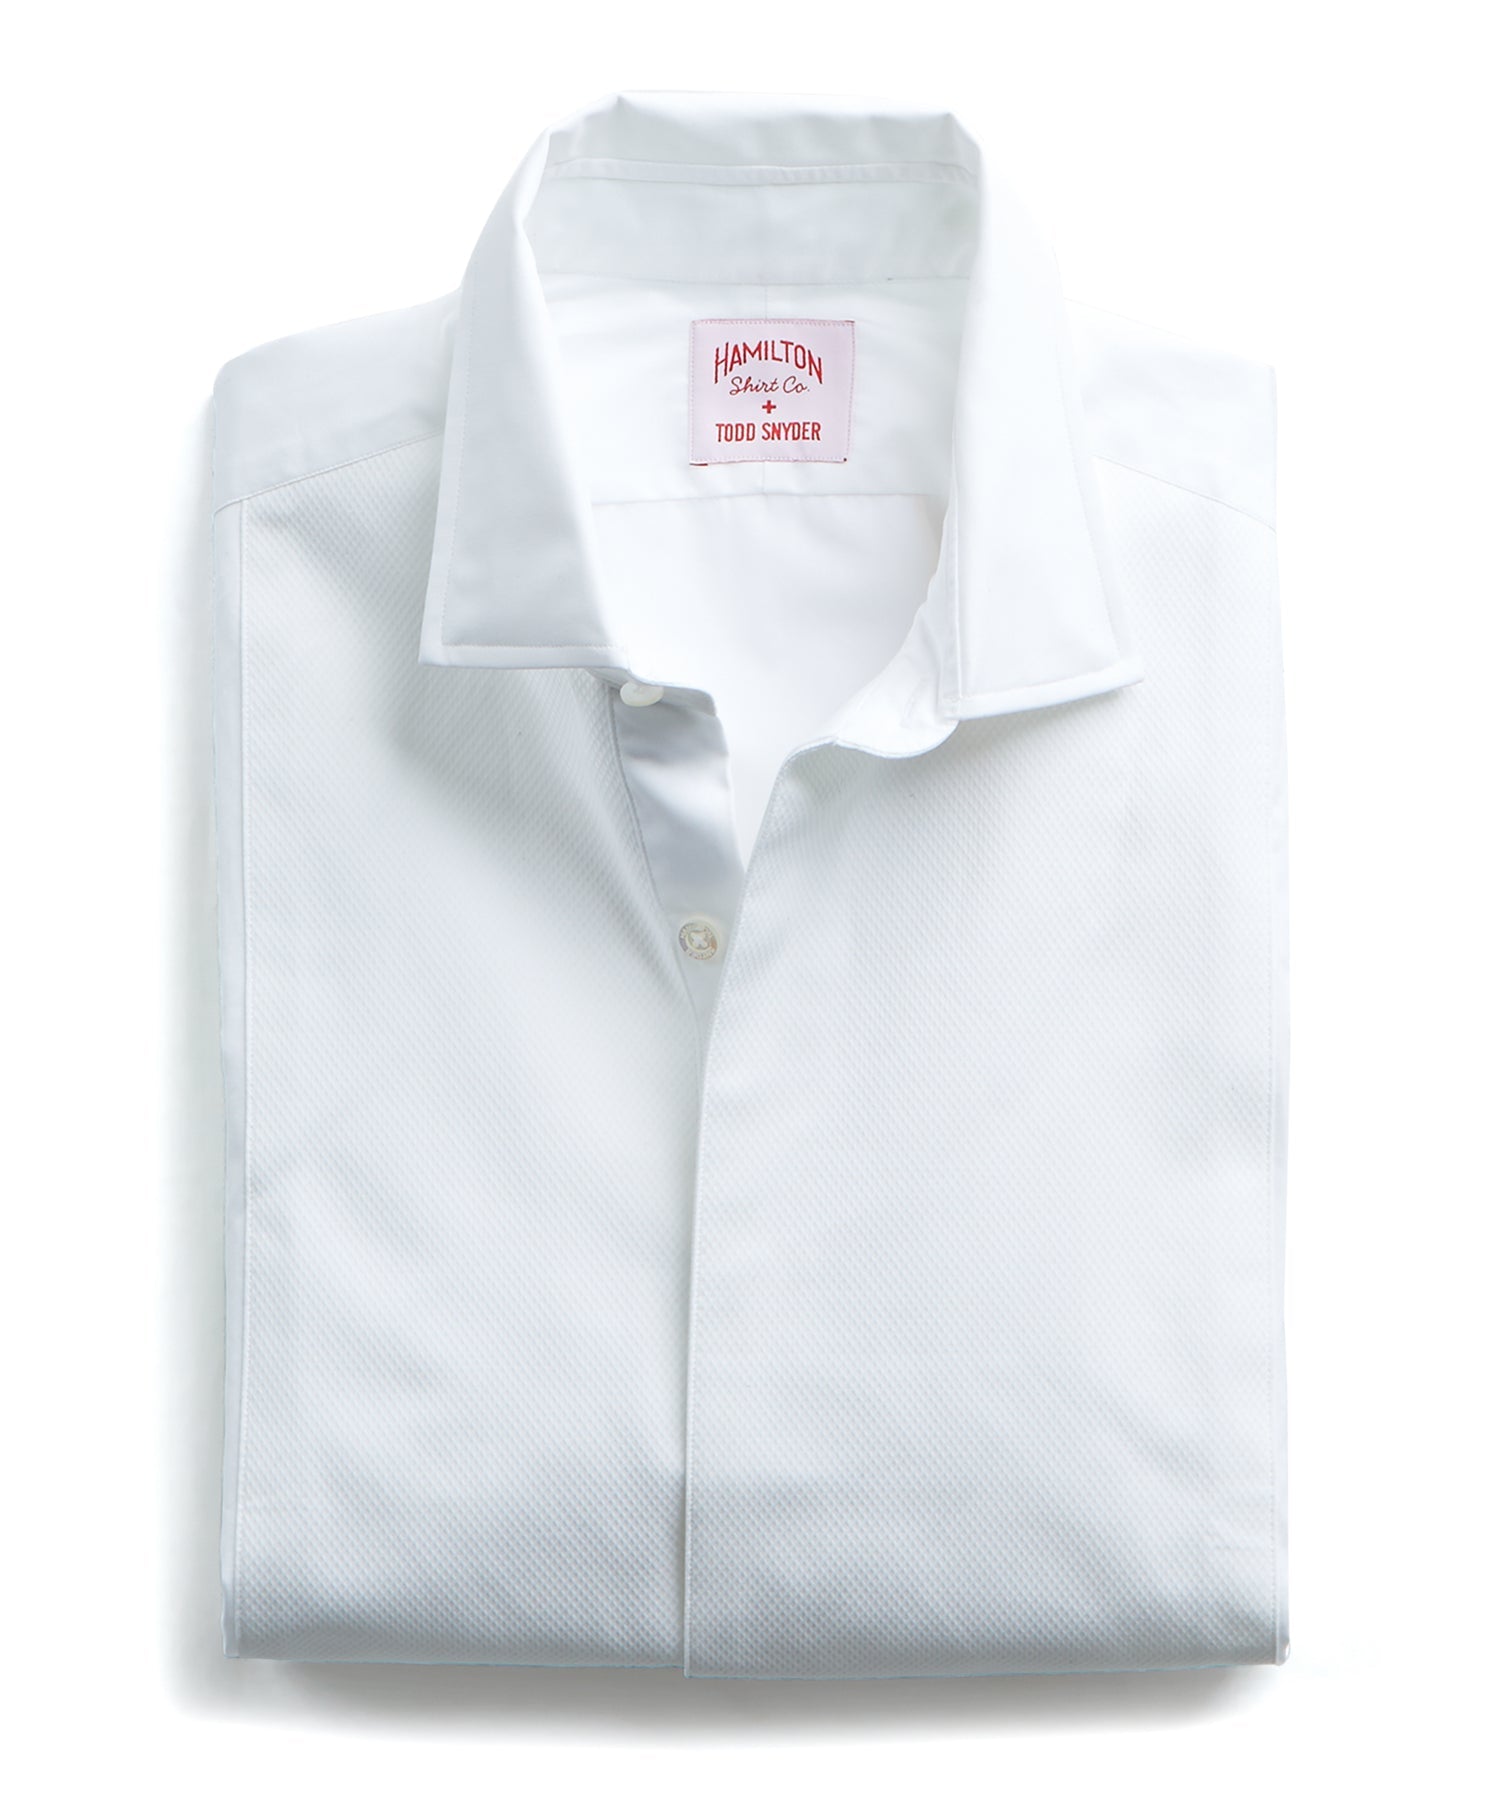 Made in the USA Hamilton + Todd Snyder White Pique Fly Front Tuxedo Shirt